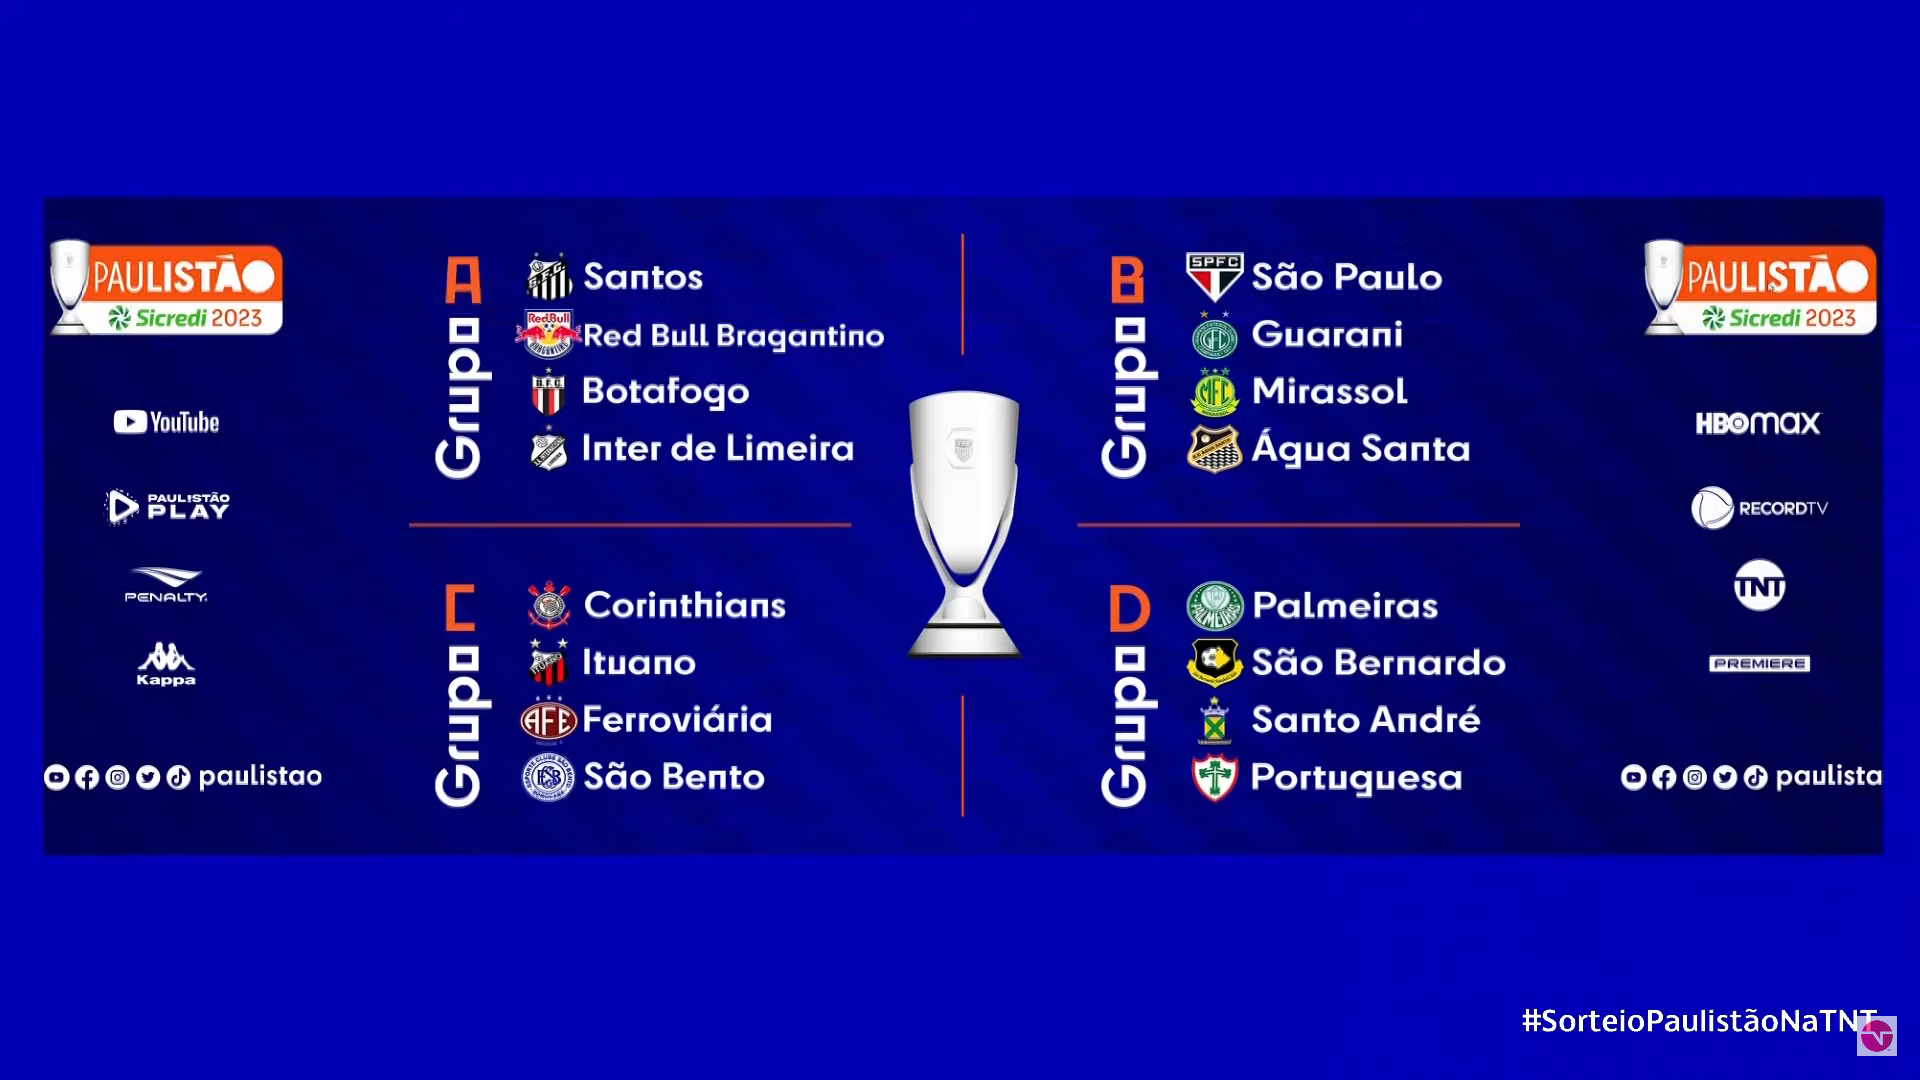 Paulistão 2022: veja como ficou a divisão dos times nos grupos - Futebol -  R7 Campeonato Paulista